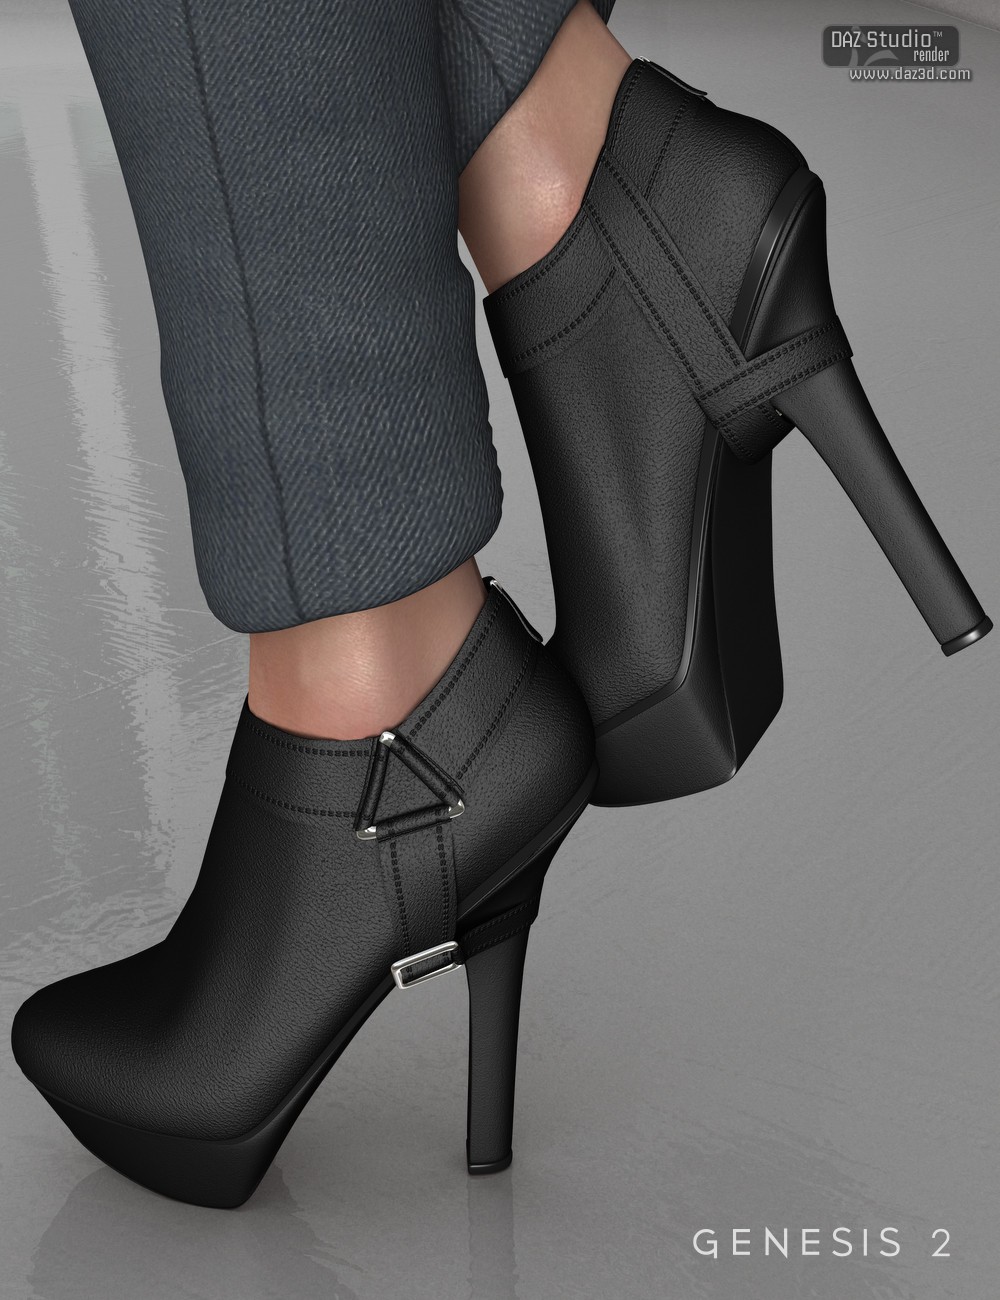 皮鞋 高跟短靴  Strapped Ankle Boots for Genesis 2 Female